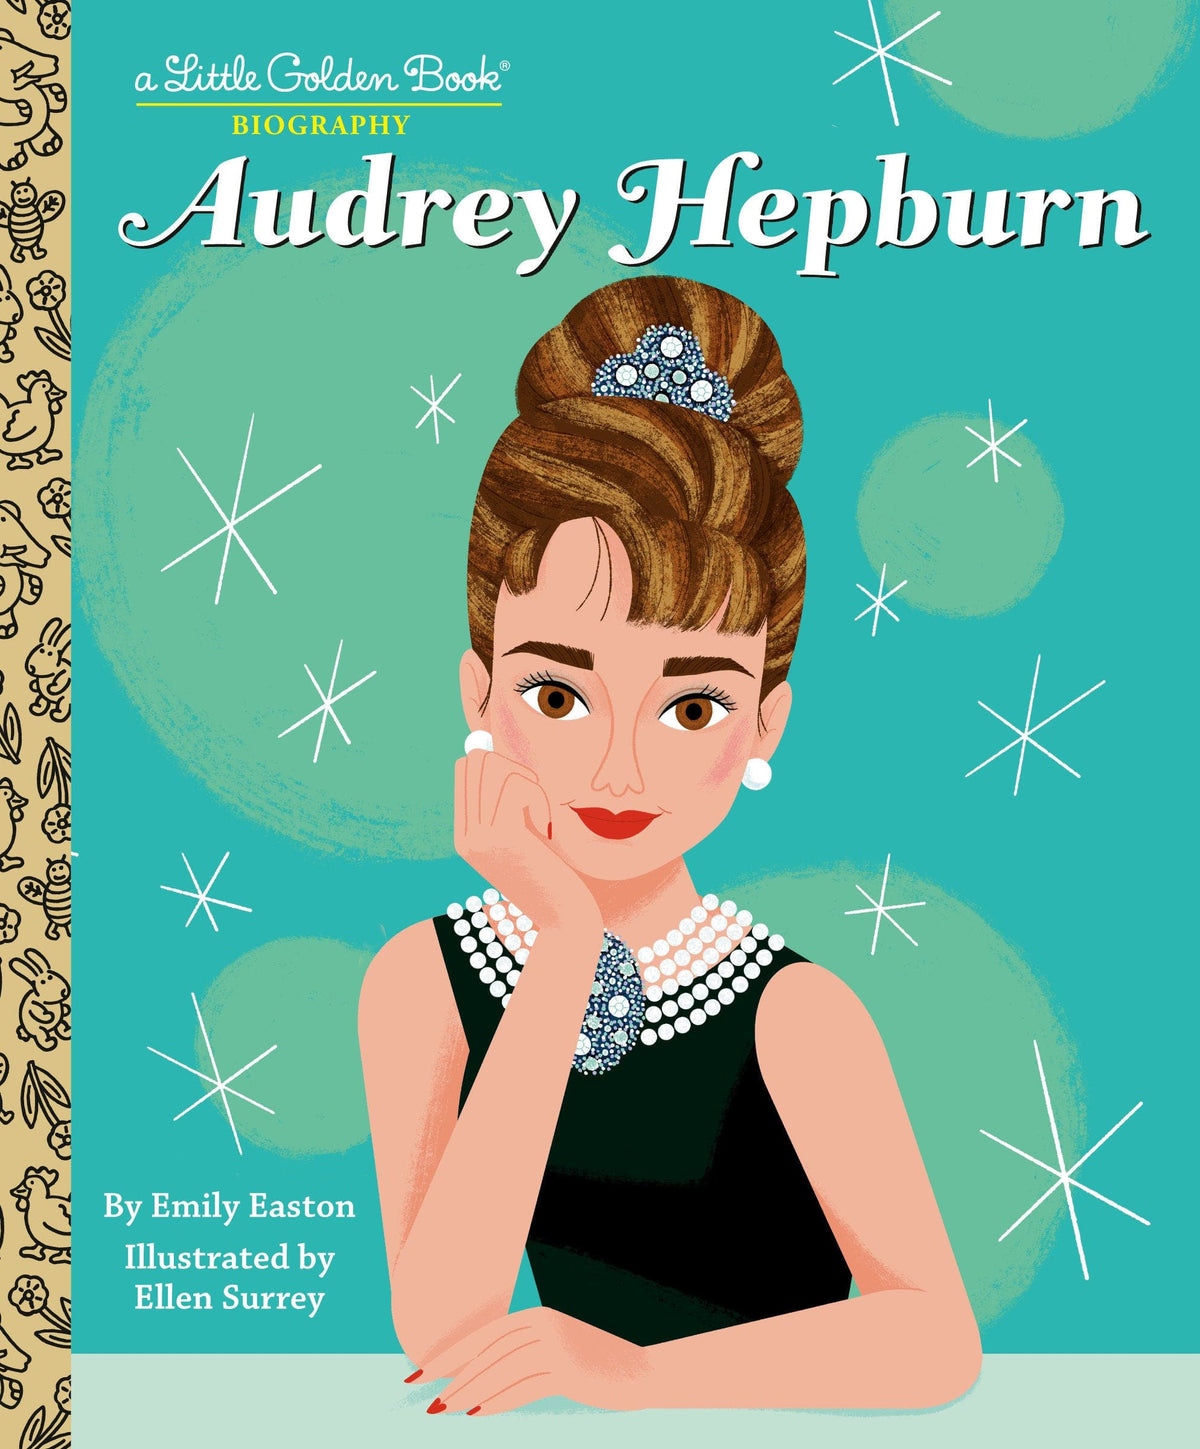 Audrey Hepburn: A Little Golden Book Biography Hardcover